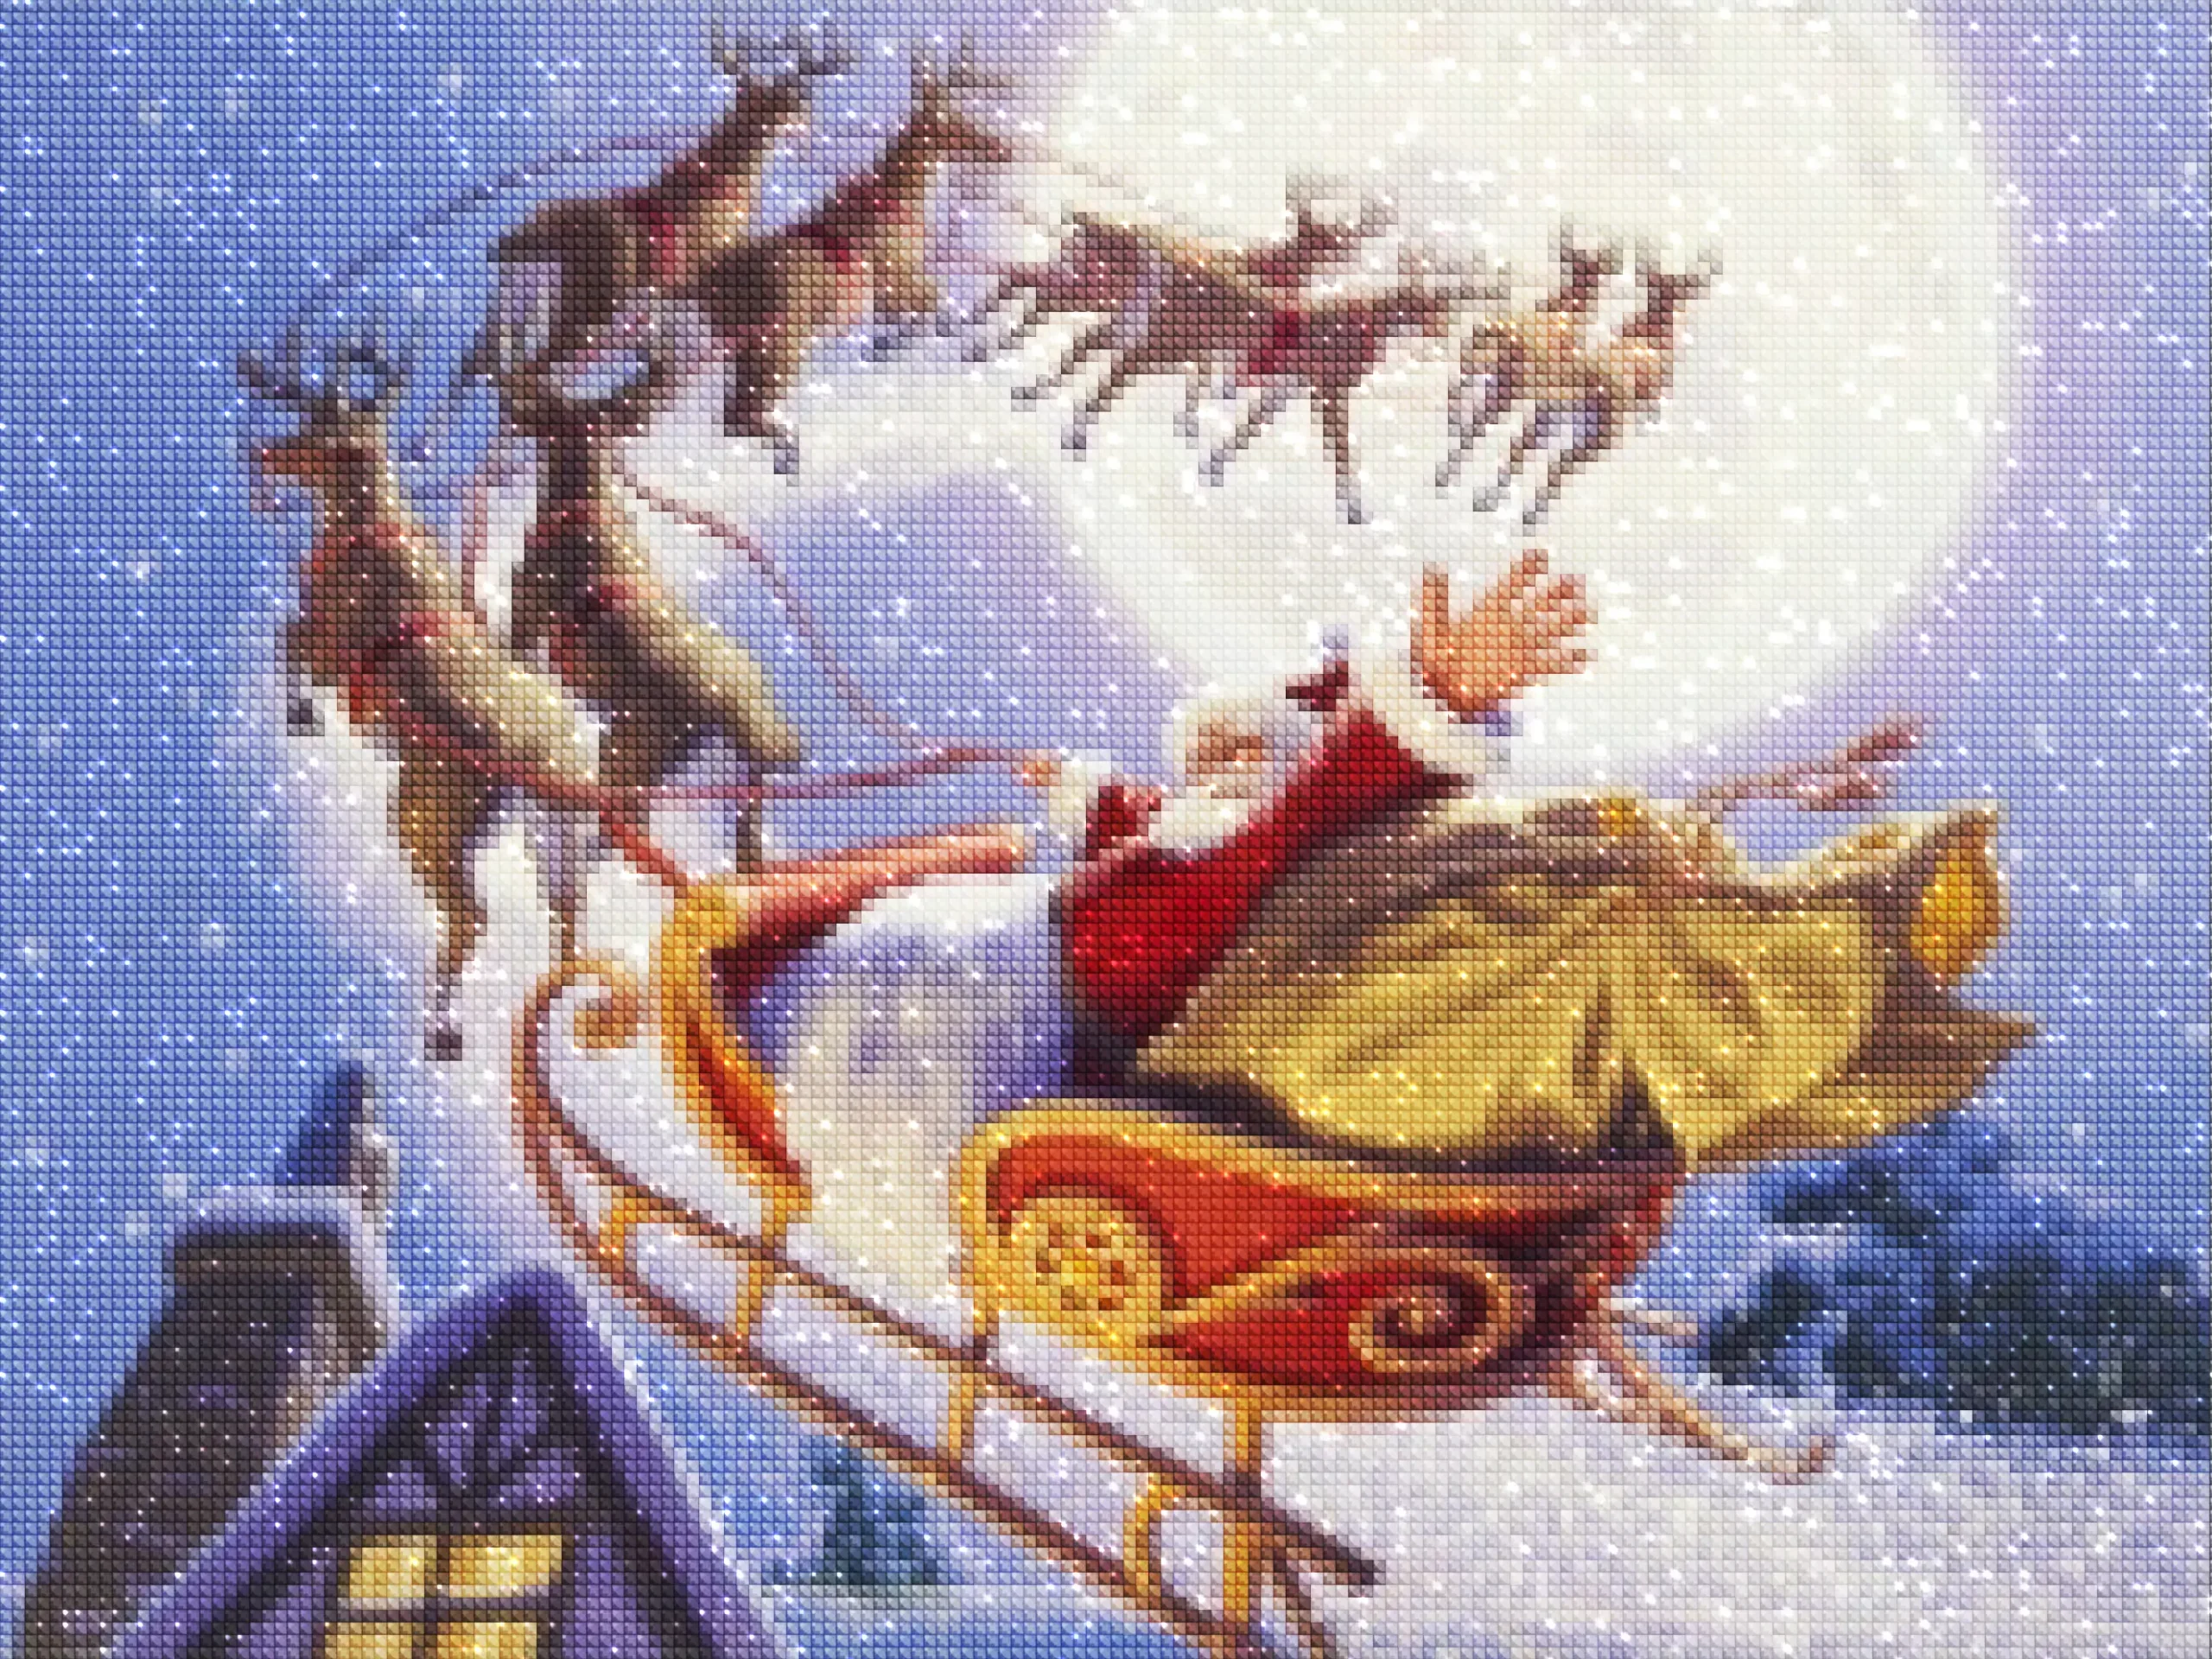 diamonds-wizard-diamond-painting-kits-Events-Christmas-Sleigh Ride with Santa Claus-diamonds.webp